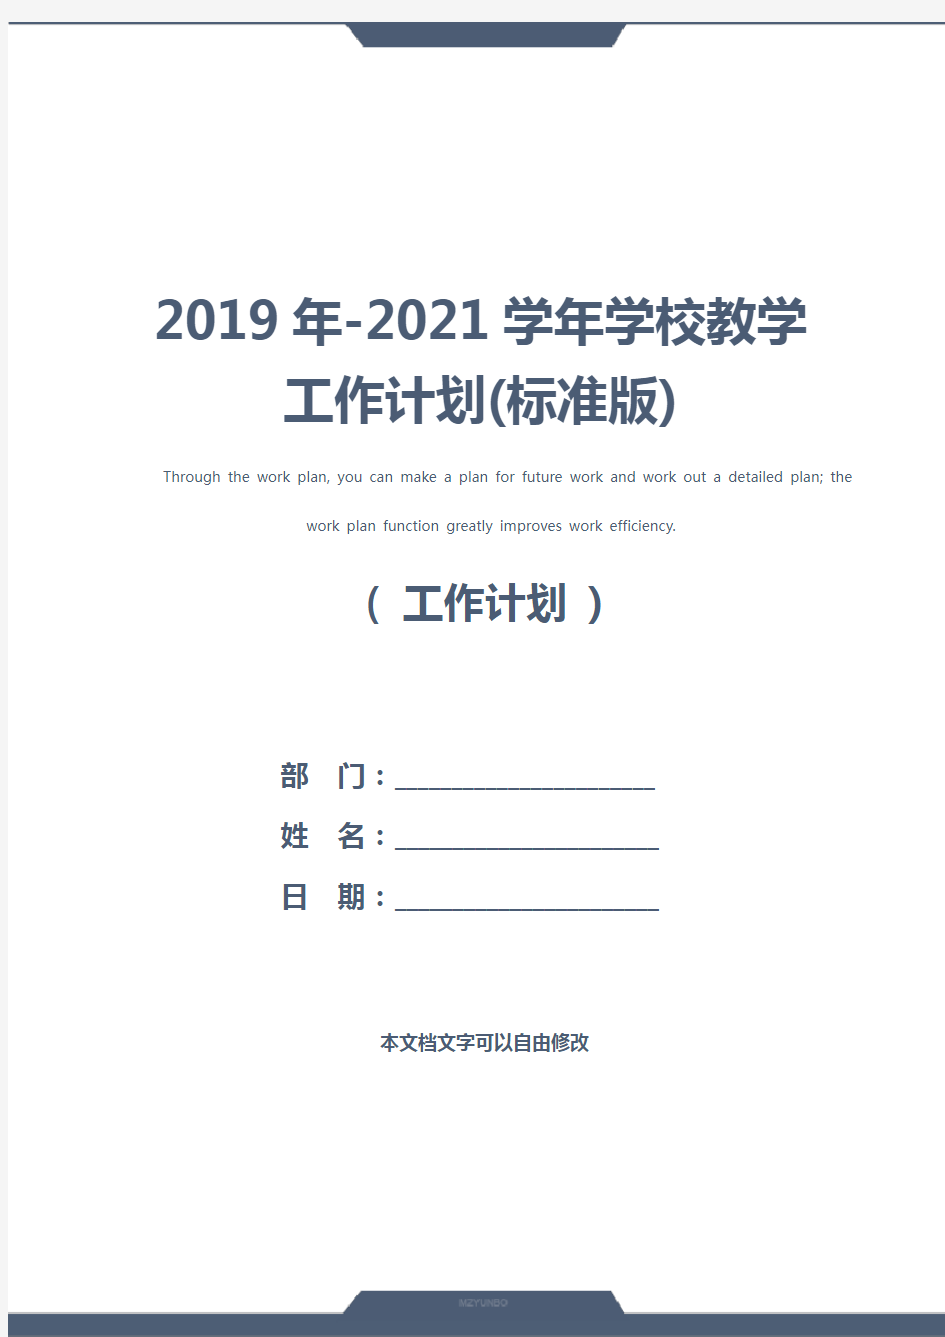 2019年-2021学年学校教学工作计划(标准版)